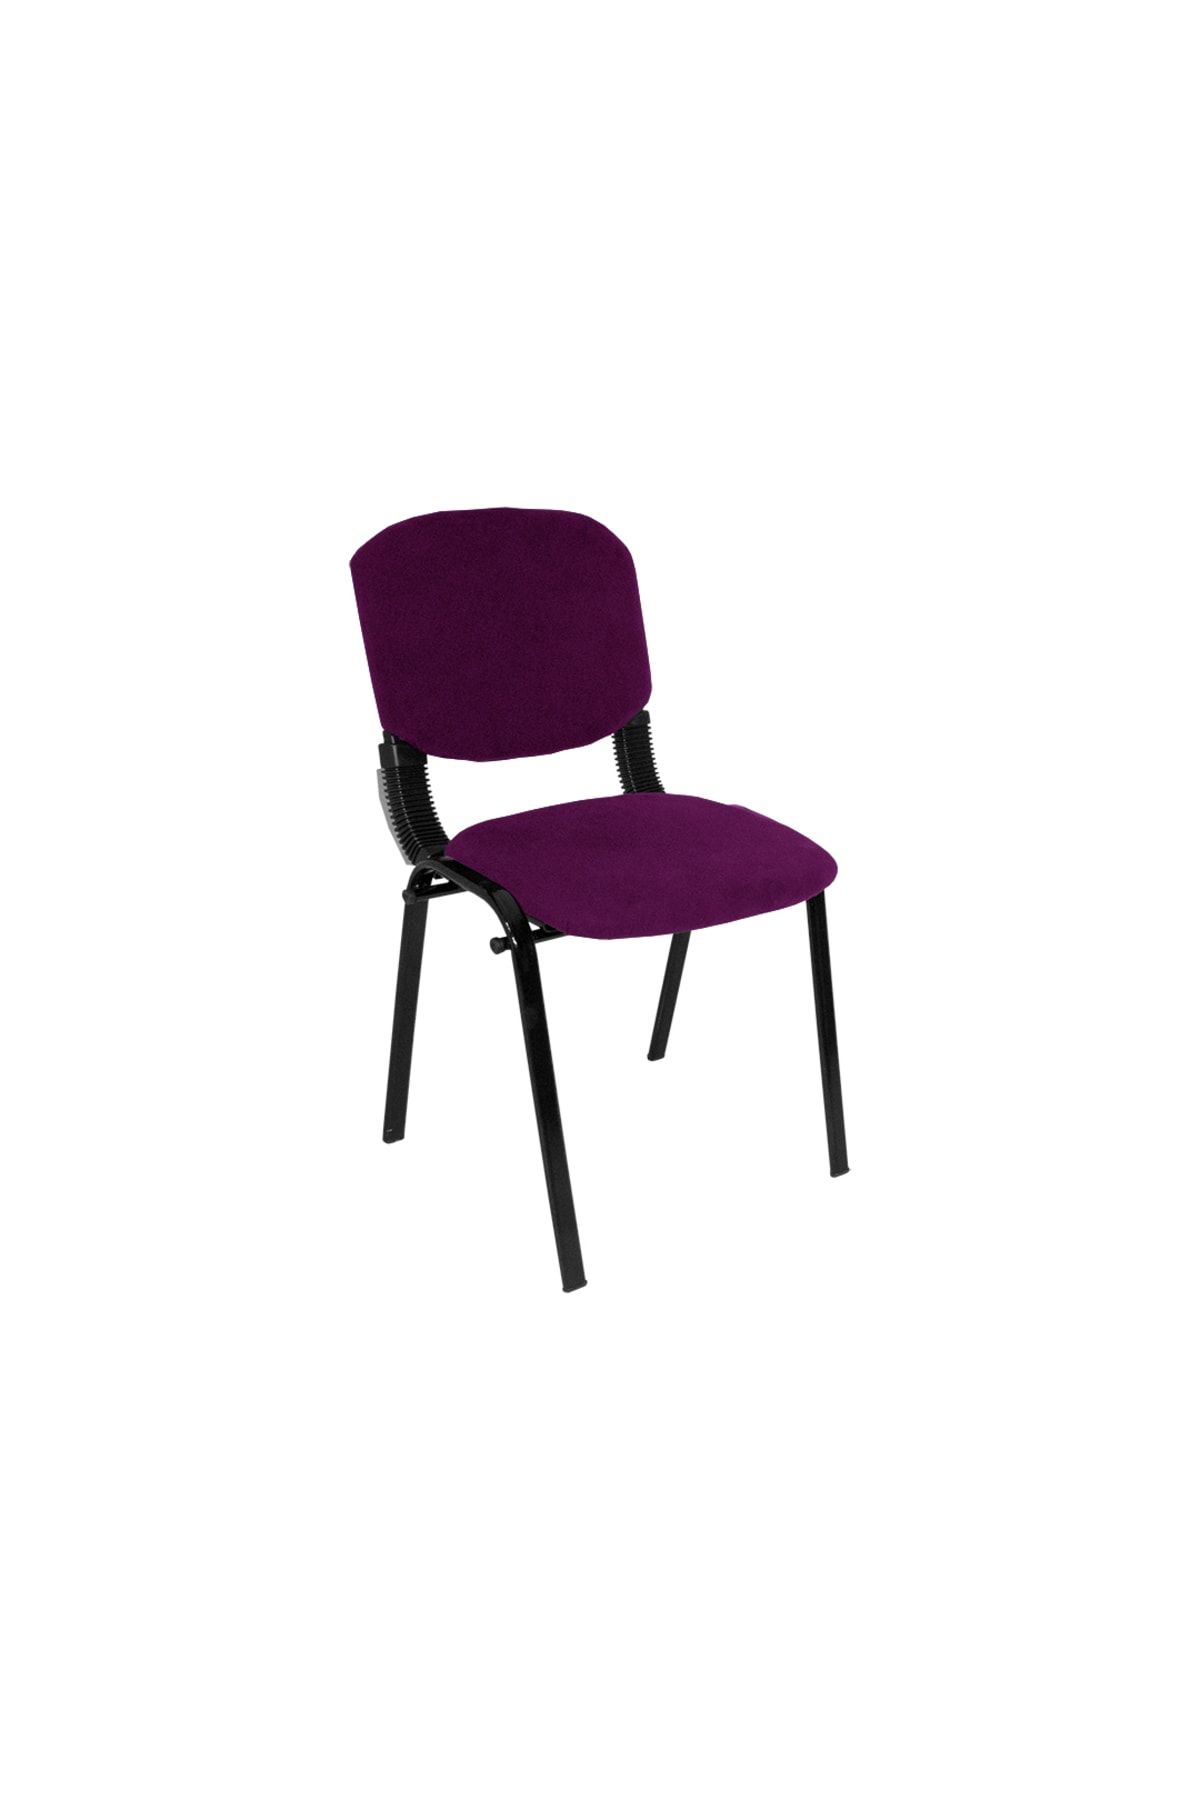 Dockers Form Ofis Ve Toplantı Sandalyesi (kumaş) - Mor